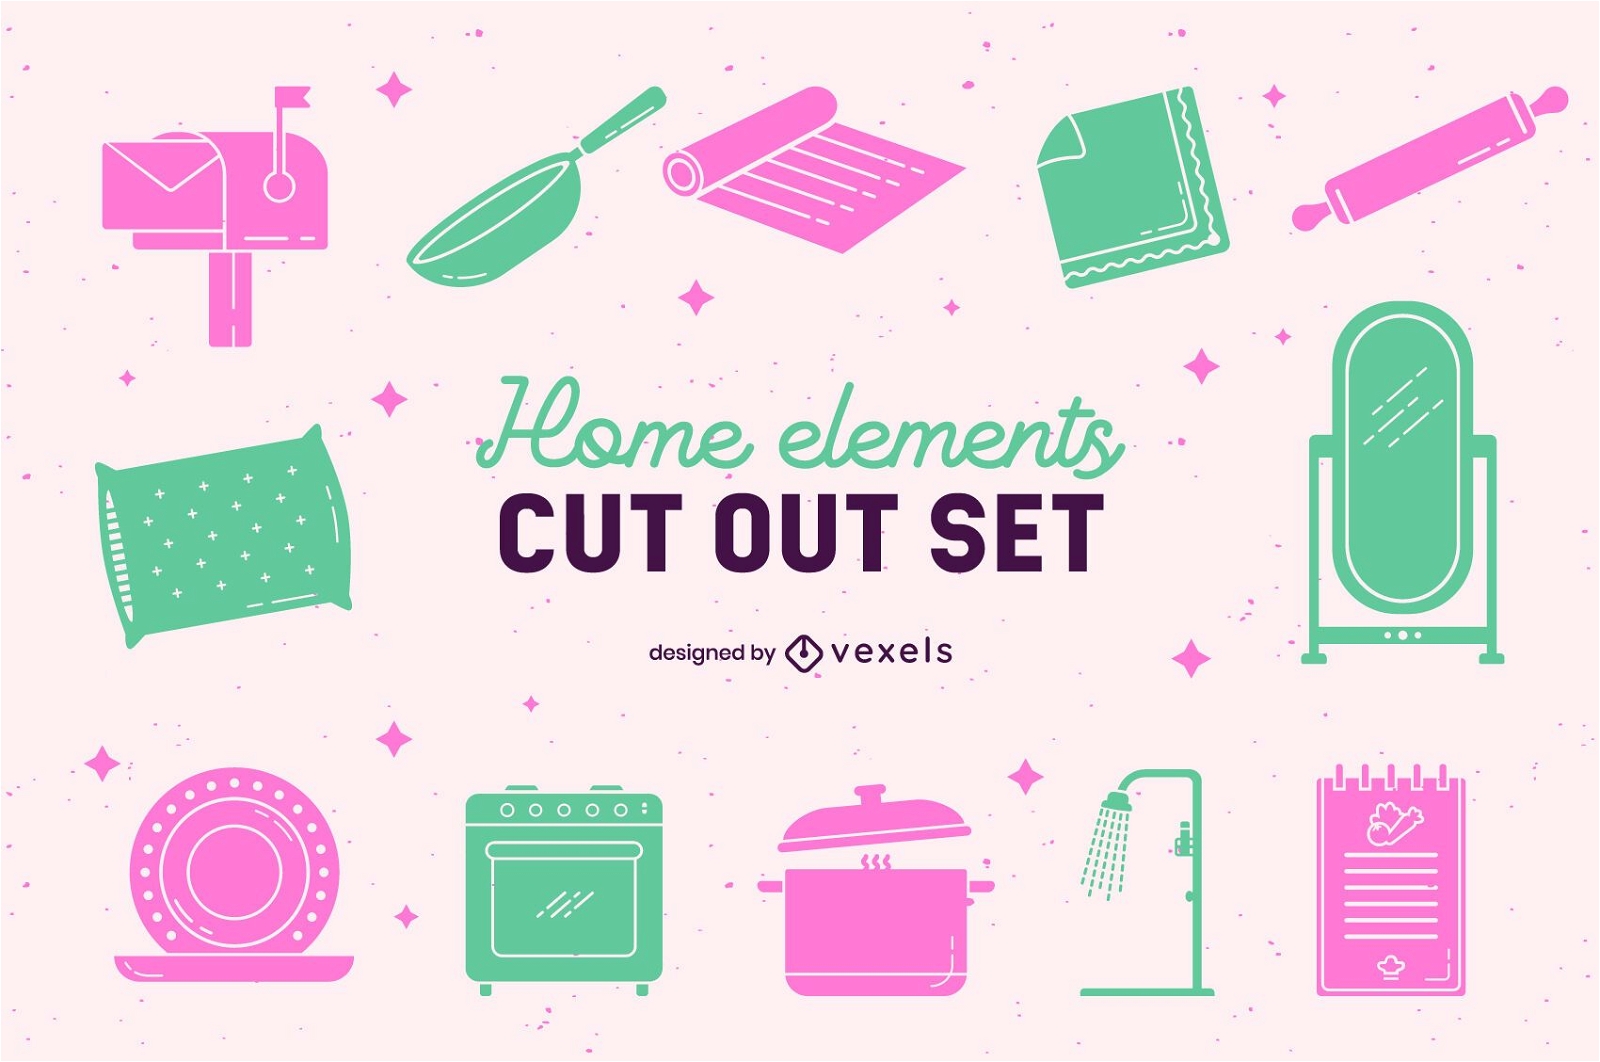 Home elements cut out set